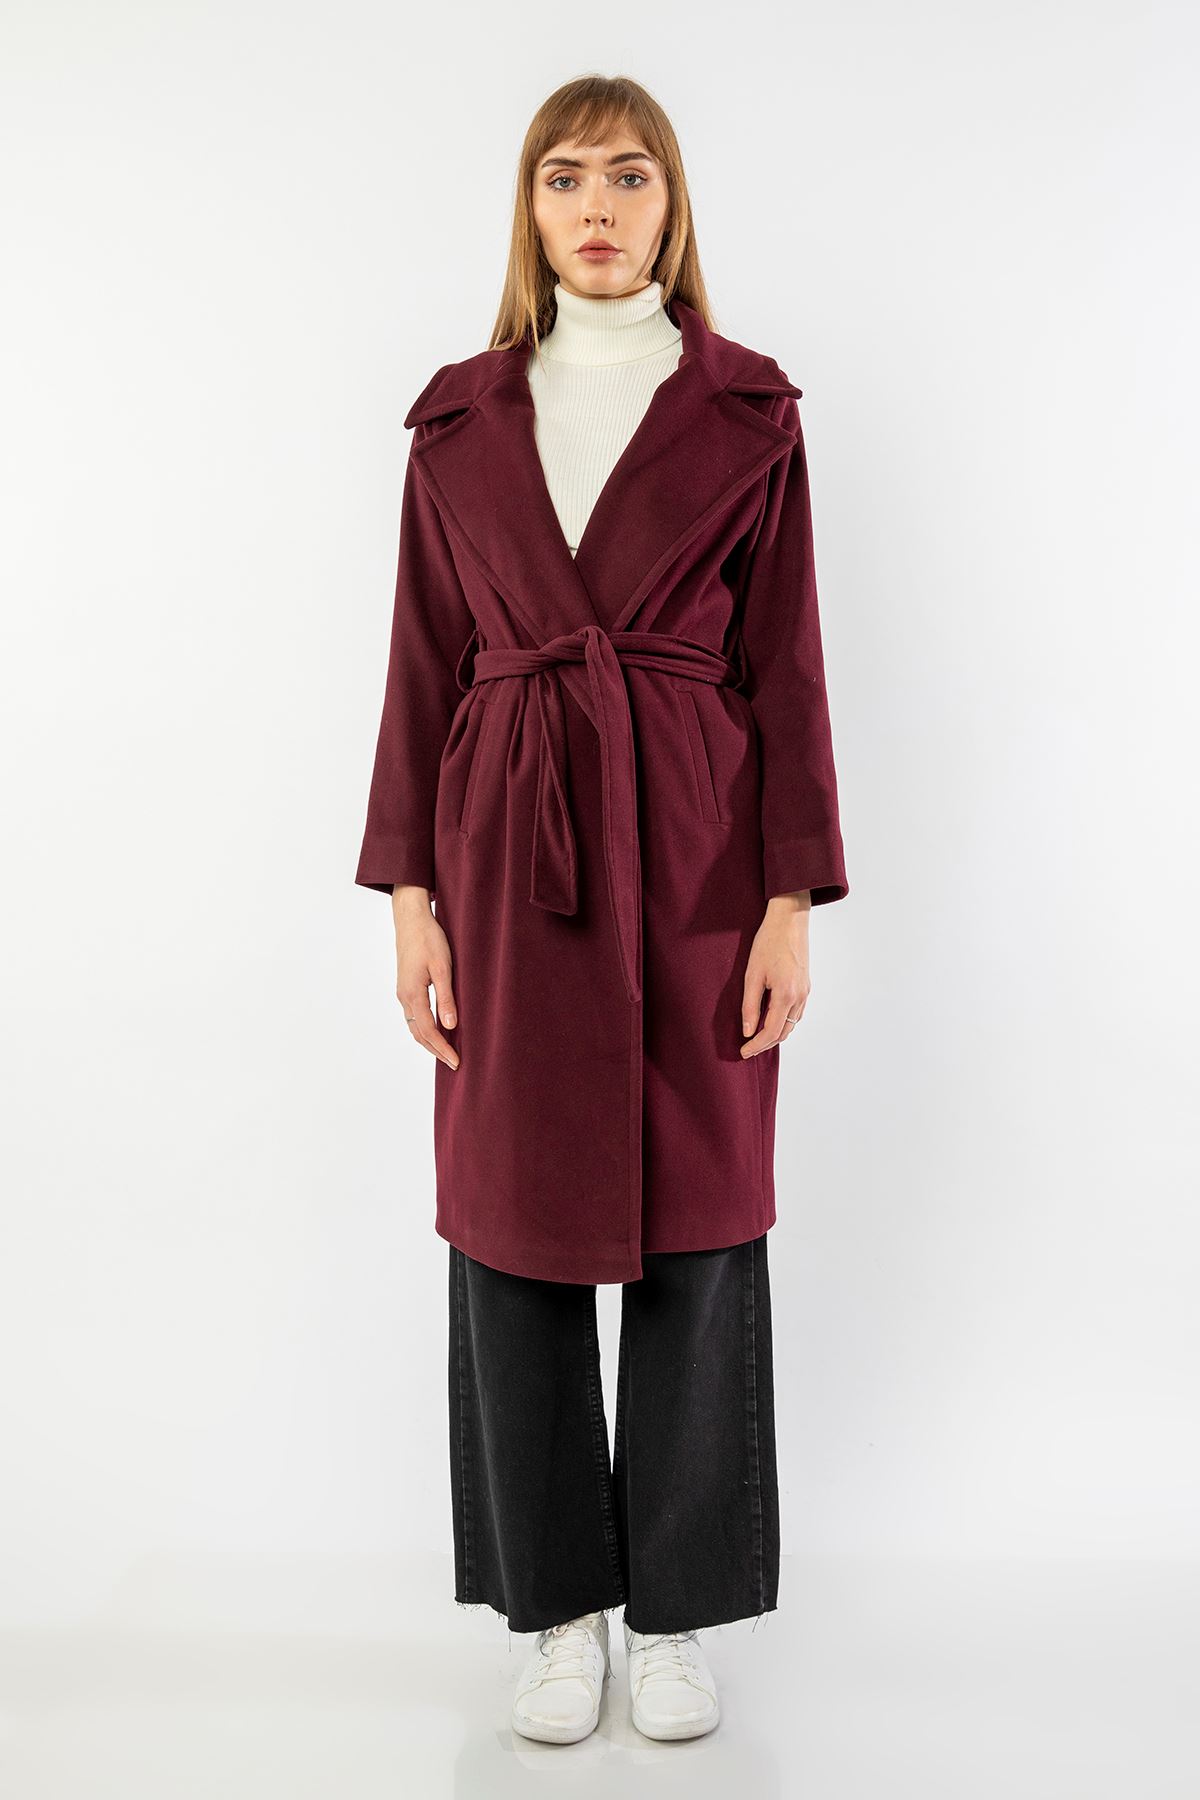 Long Sleeve Revere Collar Long Belted Women'S Coat - Plum